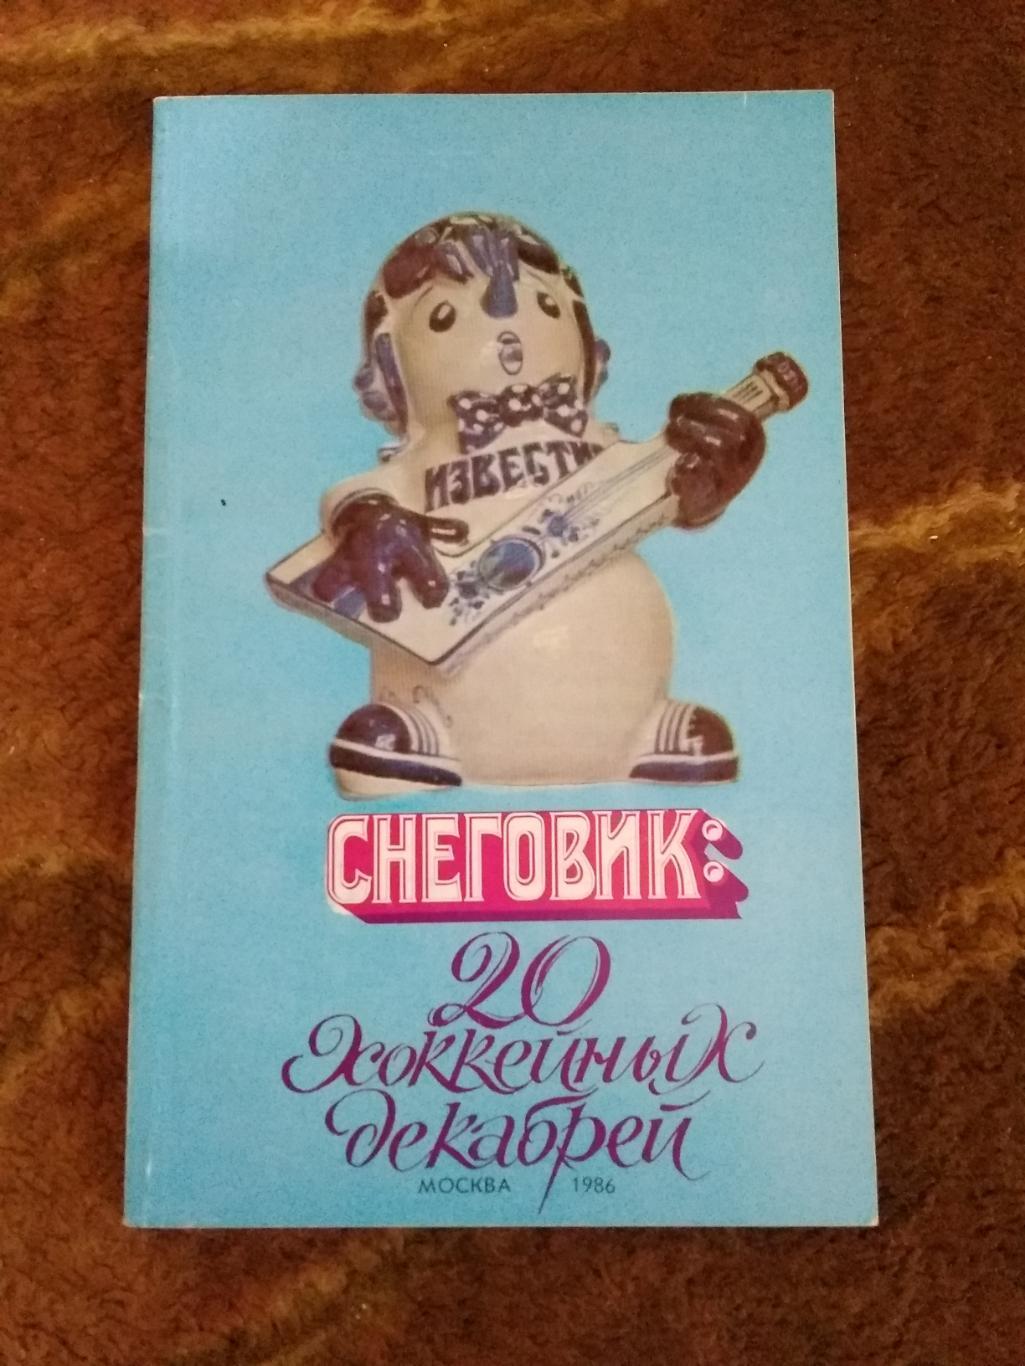 Приз Известий 1986 г. Снеговик:20 хоккейных декабрей. (Общая,Известия).